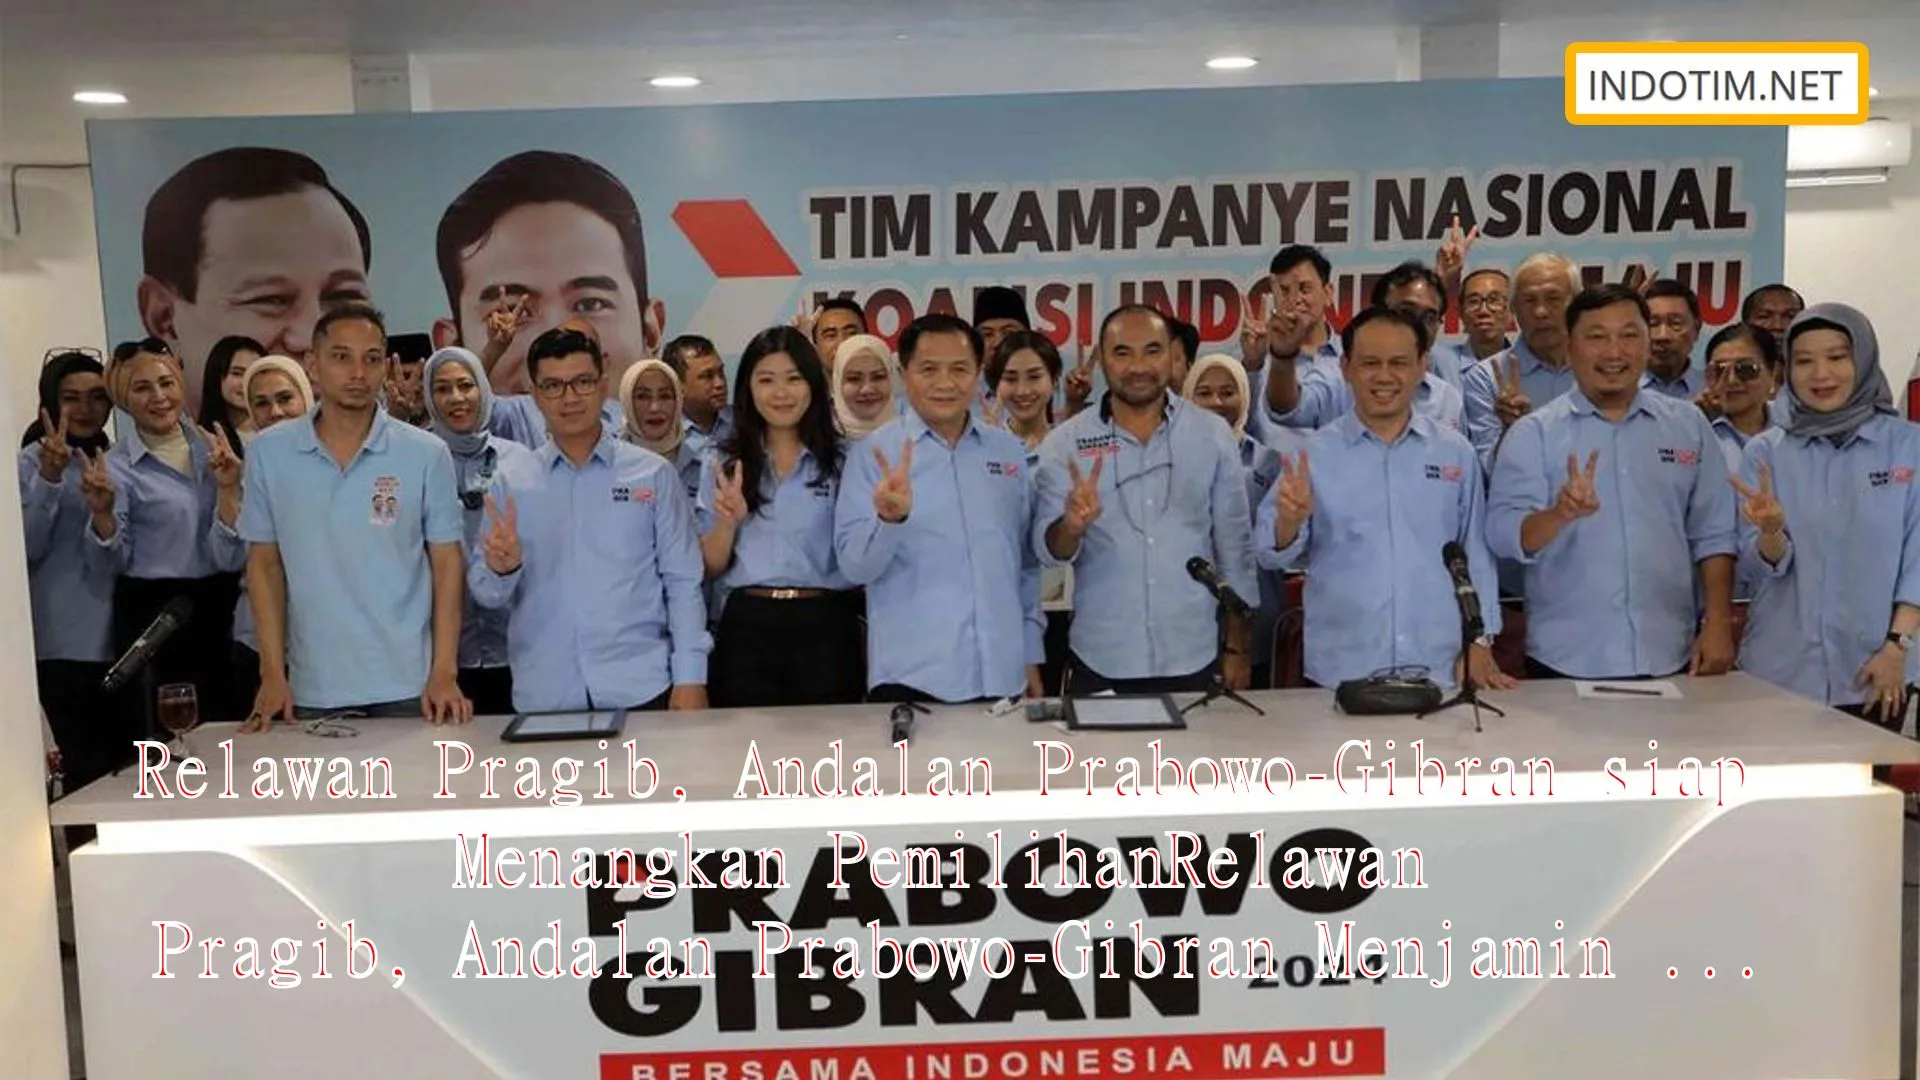 Relawan Pragib, Andalan Prabowo-Gibran siap Menangkan PemilihanRelawan Pragib, Andalan Prabowo-Gibran Menjamin Kemenangan Pemilihan